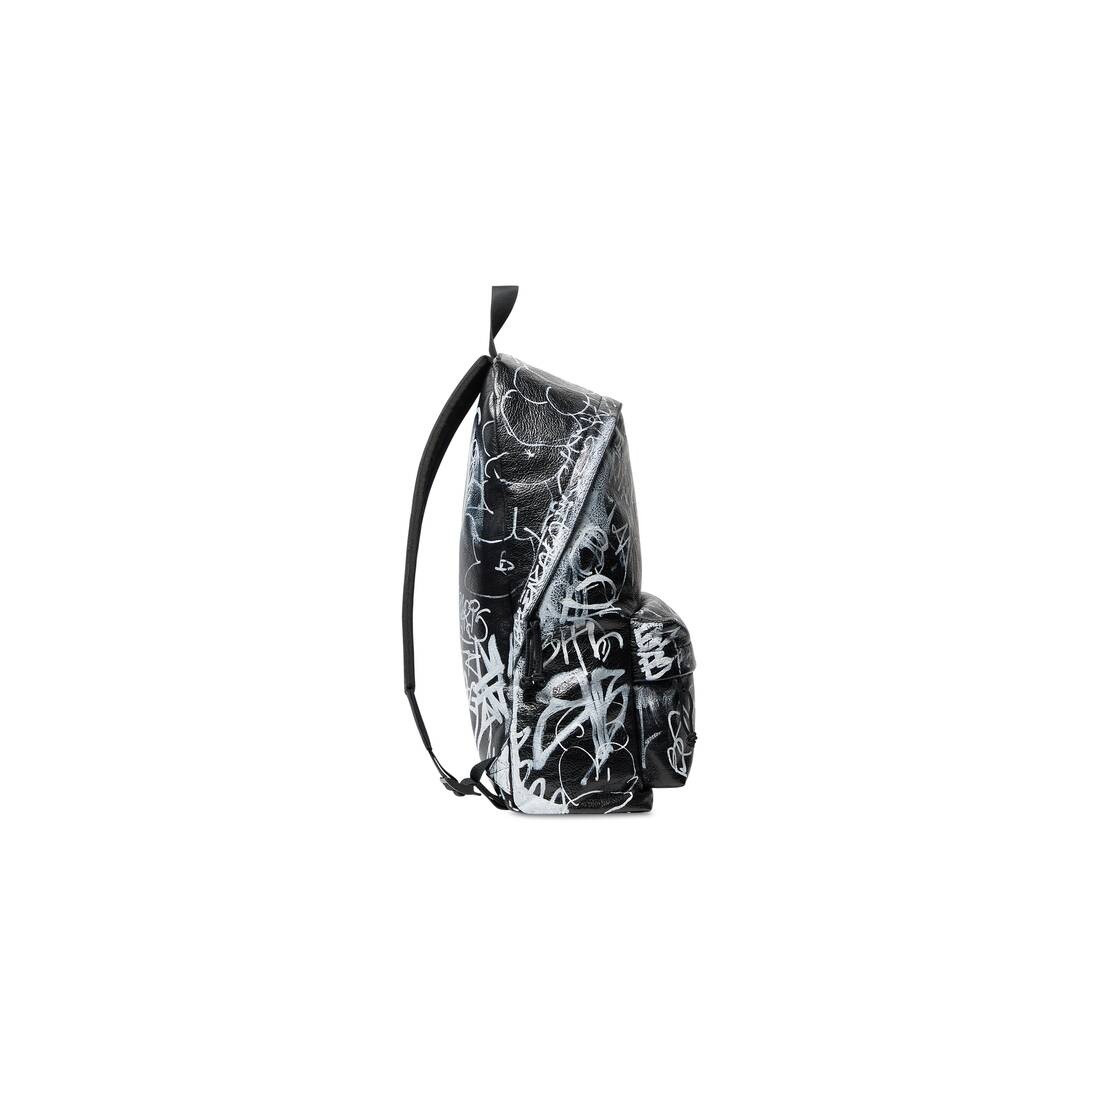 Men's Explorer Backpack Camo Print in Grey